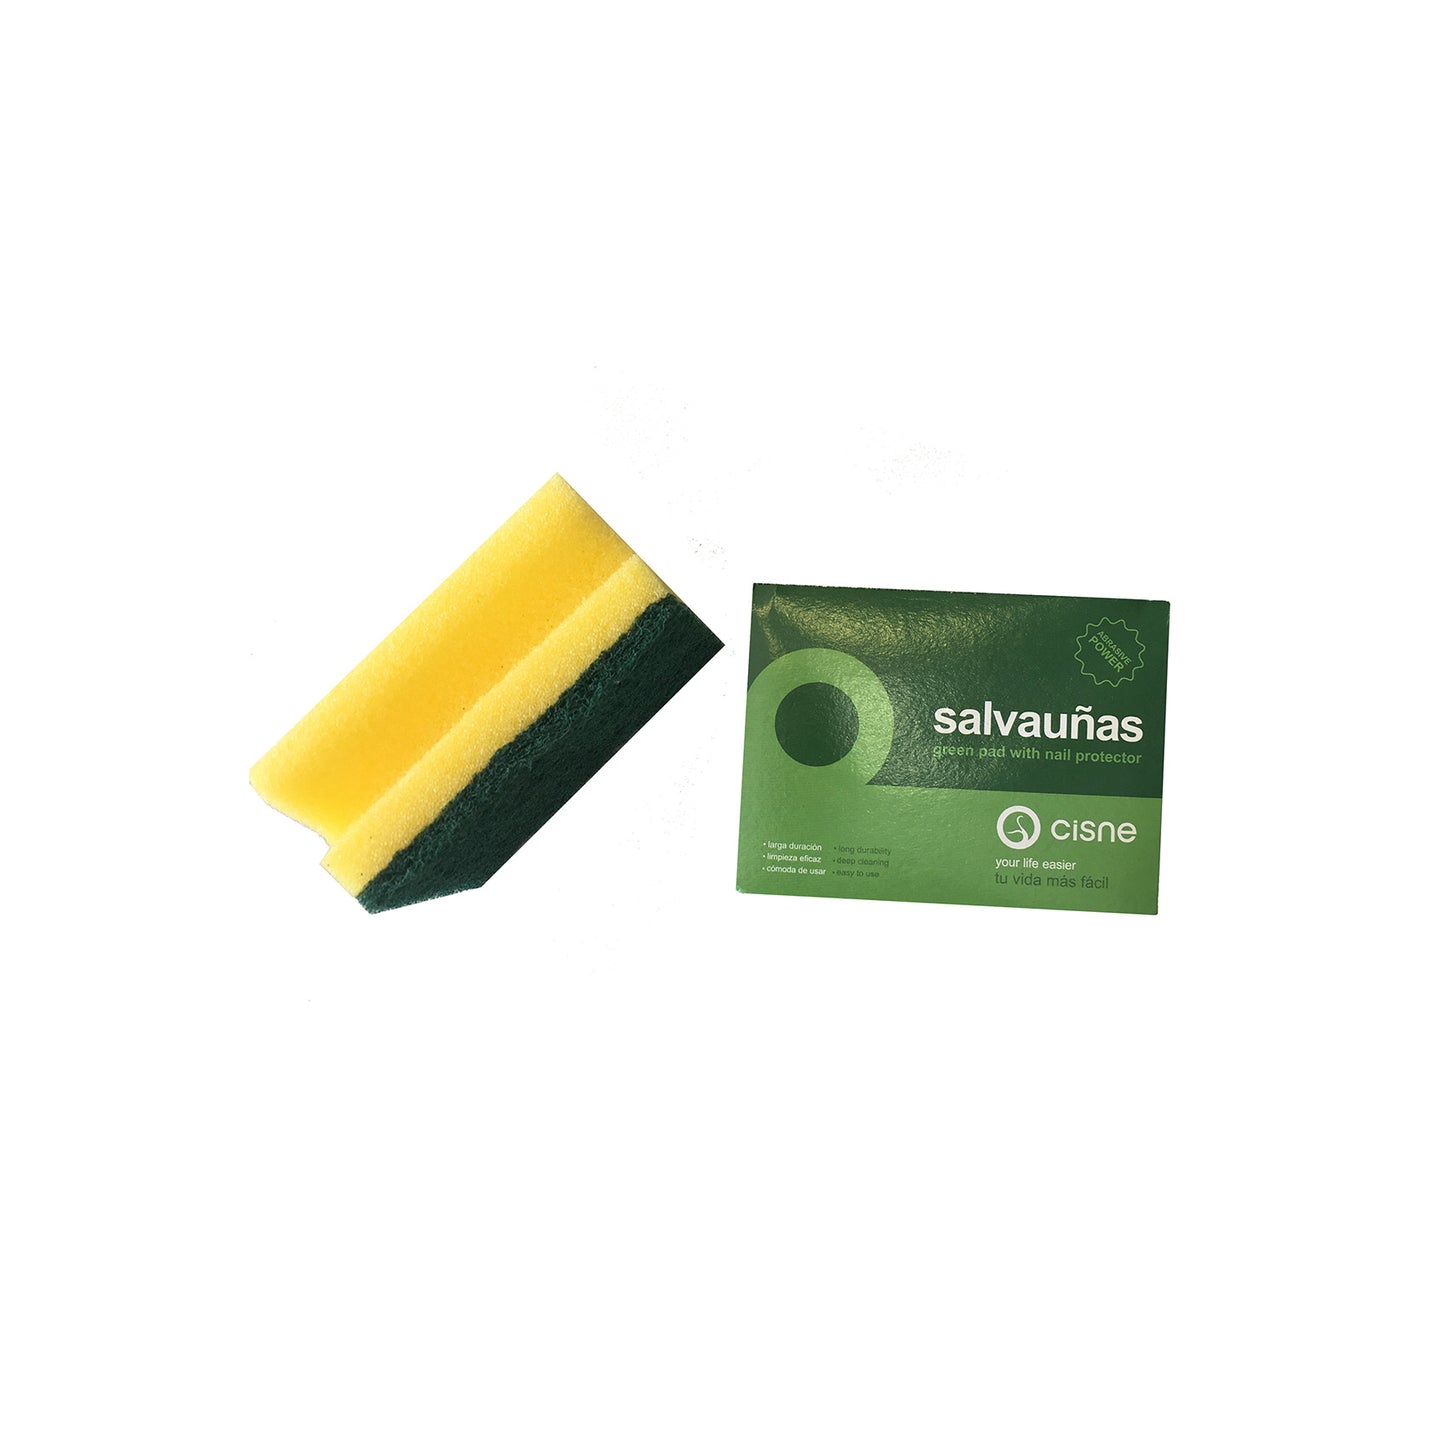 Esfregão salva unhas com esponja verde e amarela, de longa duração. Este formato permite uma limpeza eficaz, protegendo as suas mãos e unhas. 